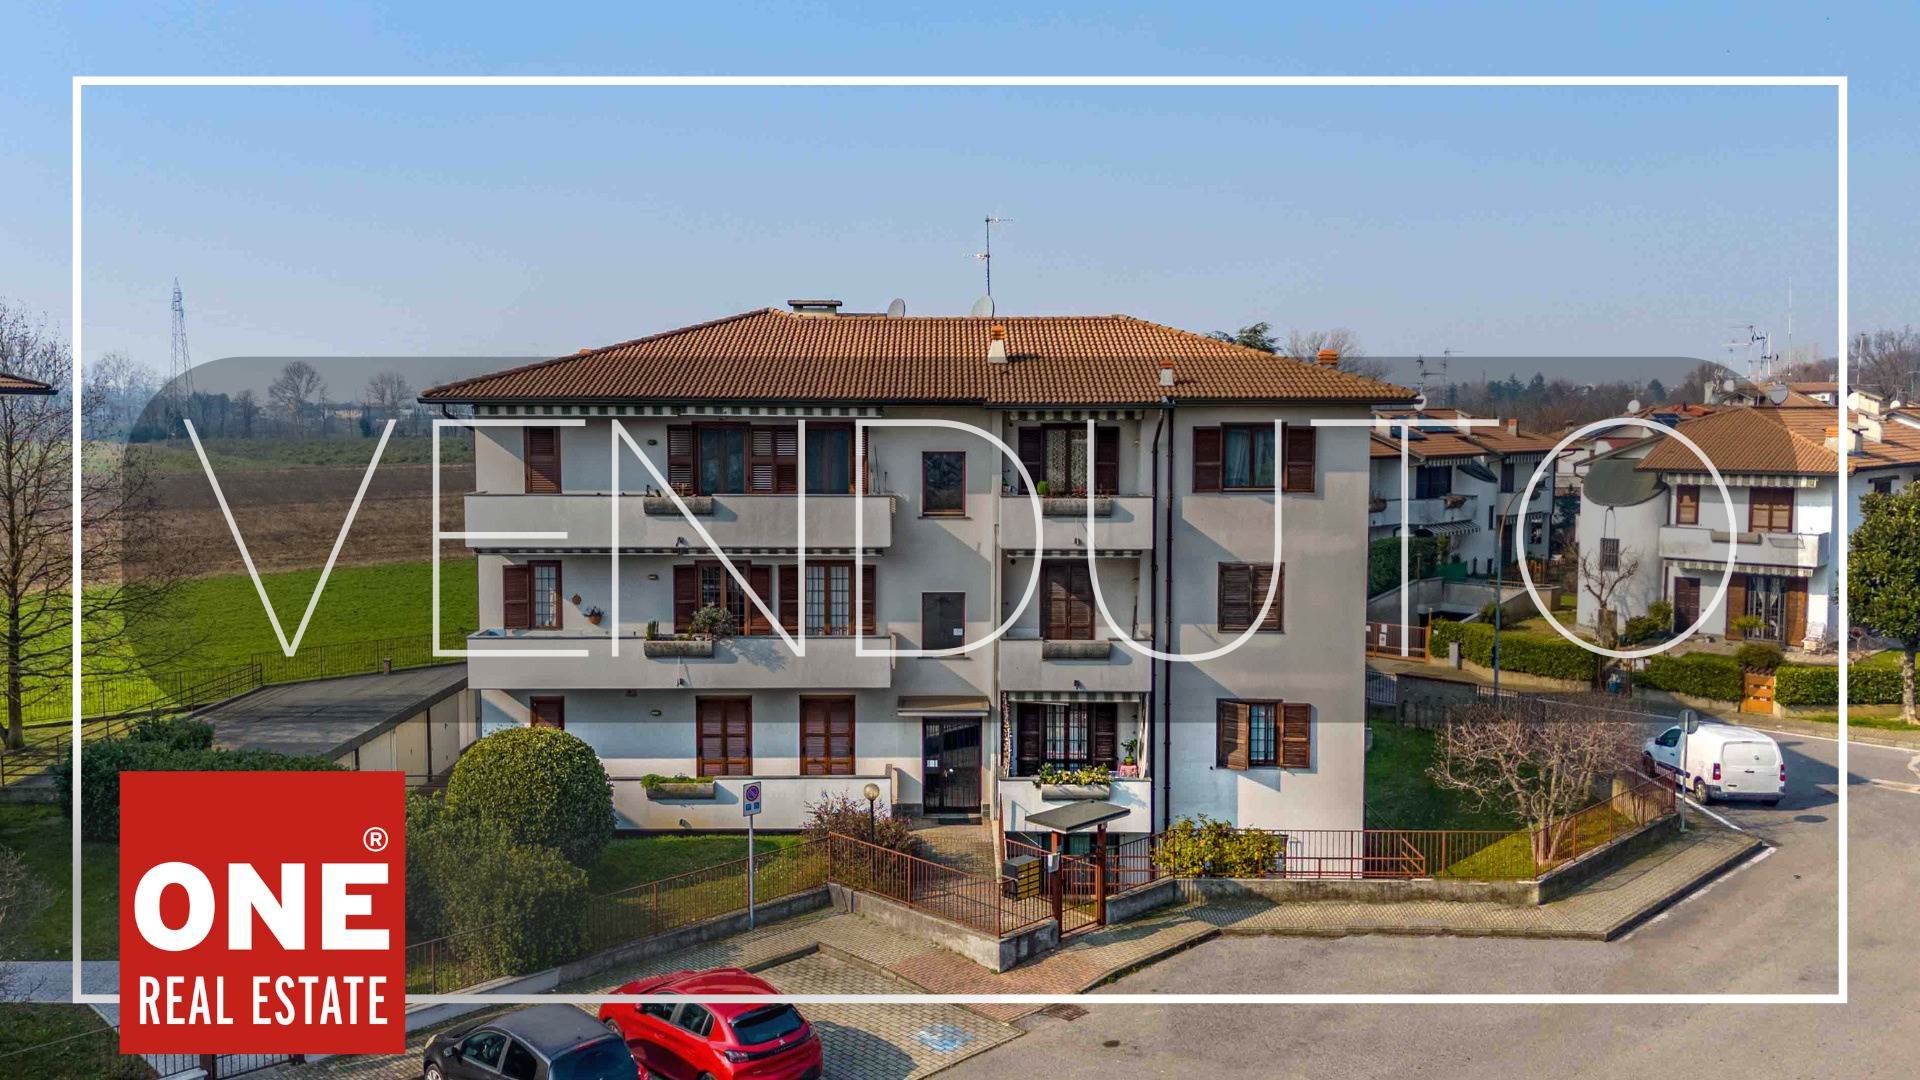 Appartamento in vendita a Pessano con Bornago, 2 locali, prezzo € 119.000 | PortaleAgenzieImmobiliari.it